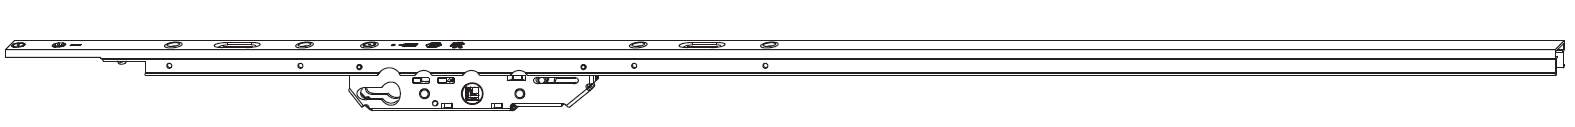 MAICO -  Cremonese RAIL-SYSTEMS per alzante scorrevole altezza maniglia fissa con chiusura a perni - gr / dim. 1 - L.1300 - entrata 37,5 - alt. man. 400 - lbb/hbb 745-1360